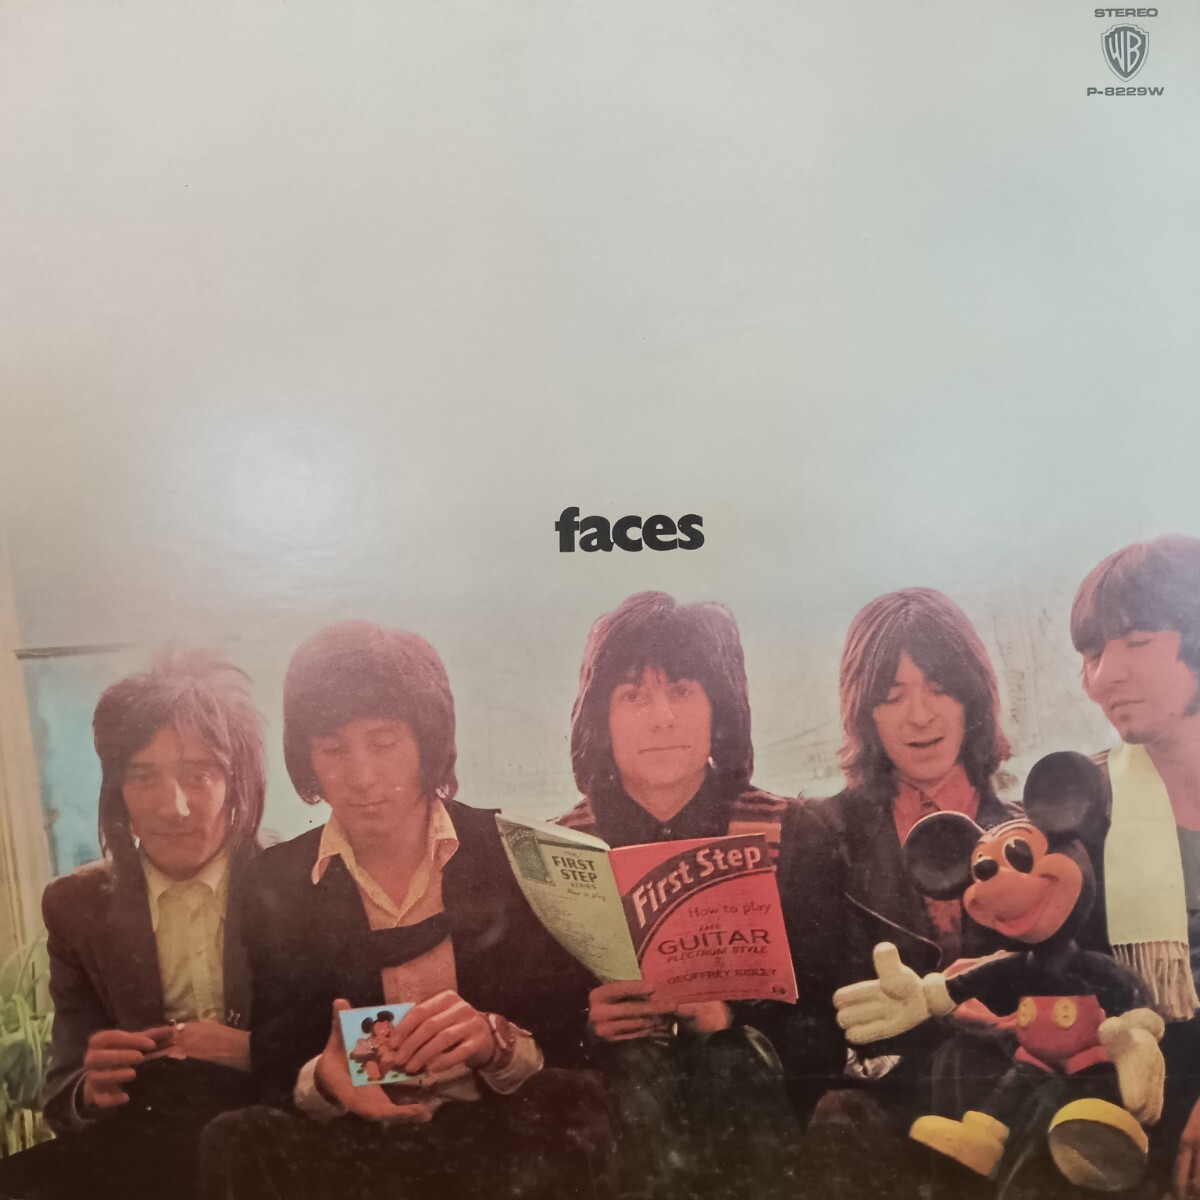 日本Warner盤LP 初回 緑ラベル Faces / Fist Step 1972年 P-8229W Rod Stewart Small Ronnie Lane ロッド・スチュワート フェイセズ_画像1